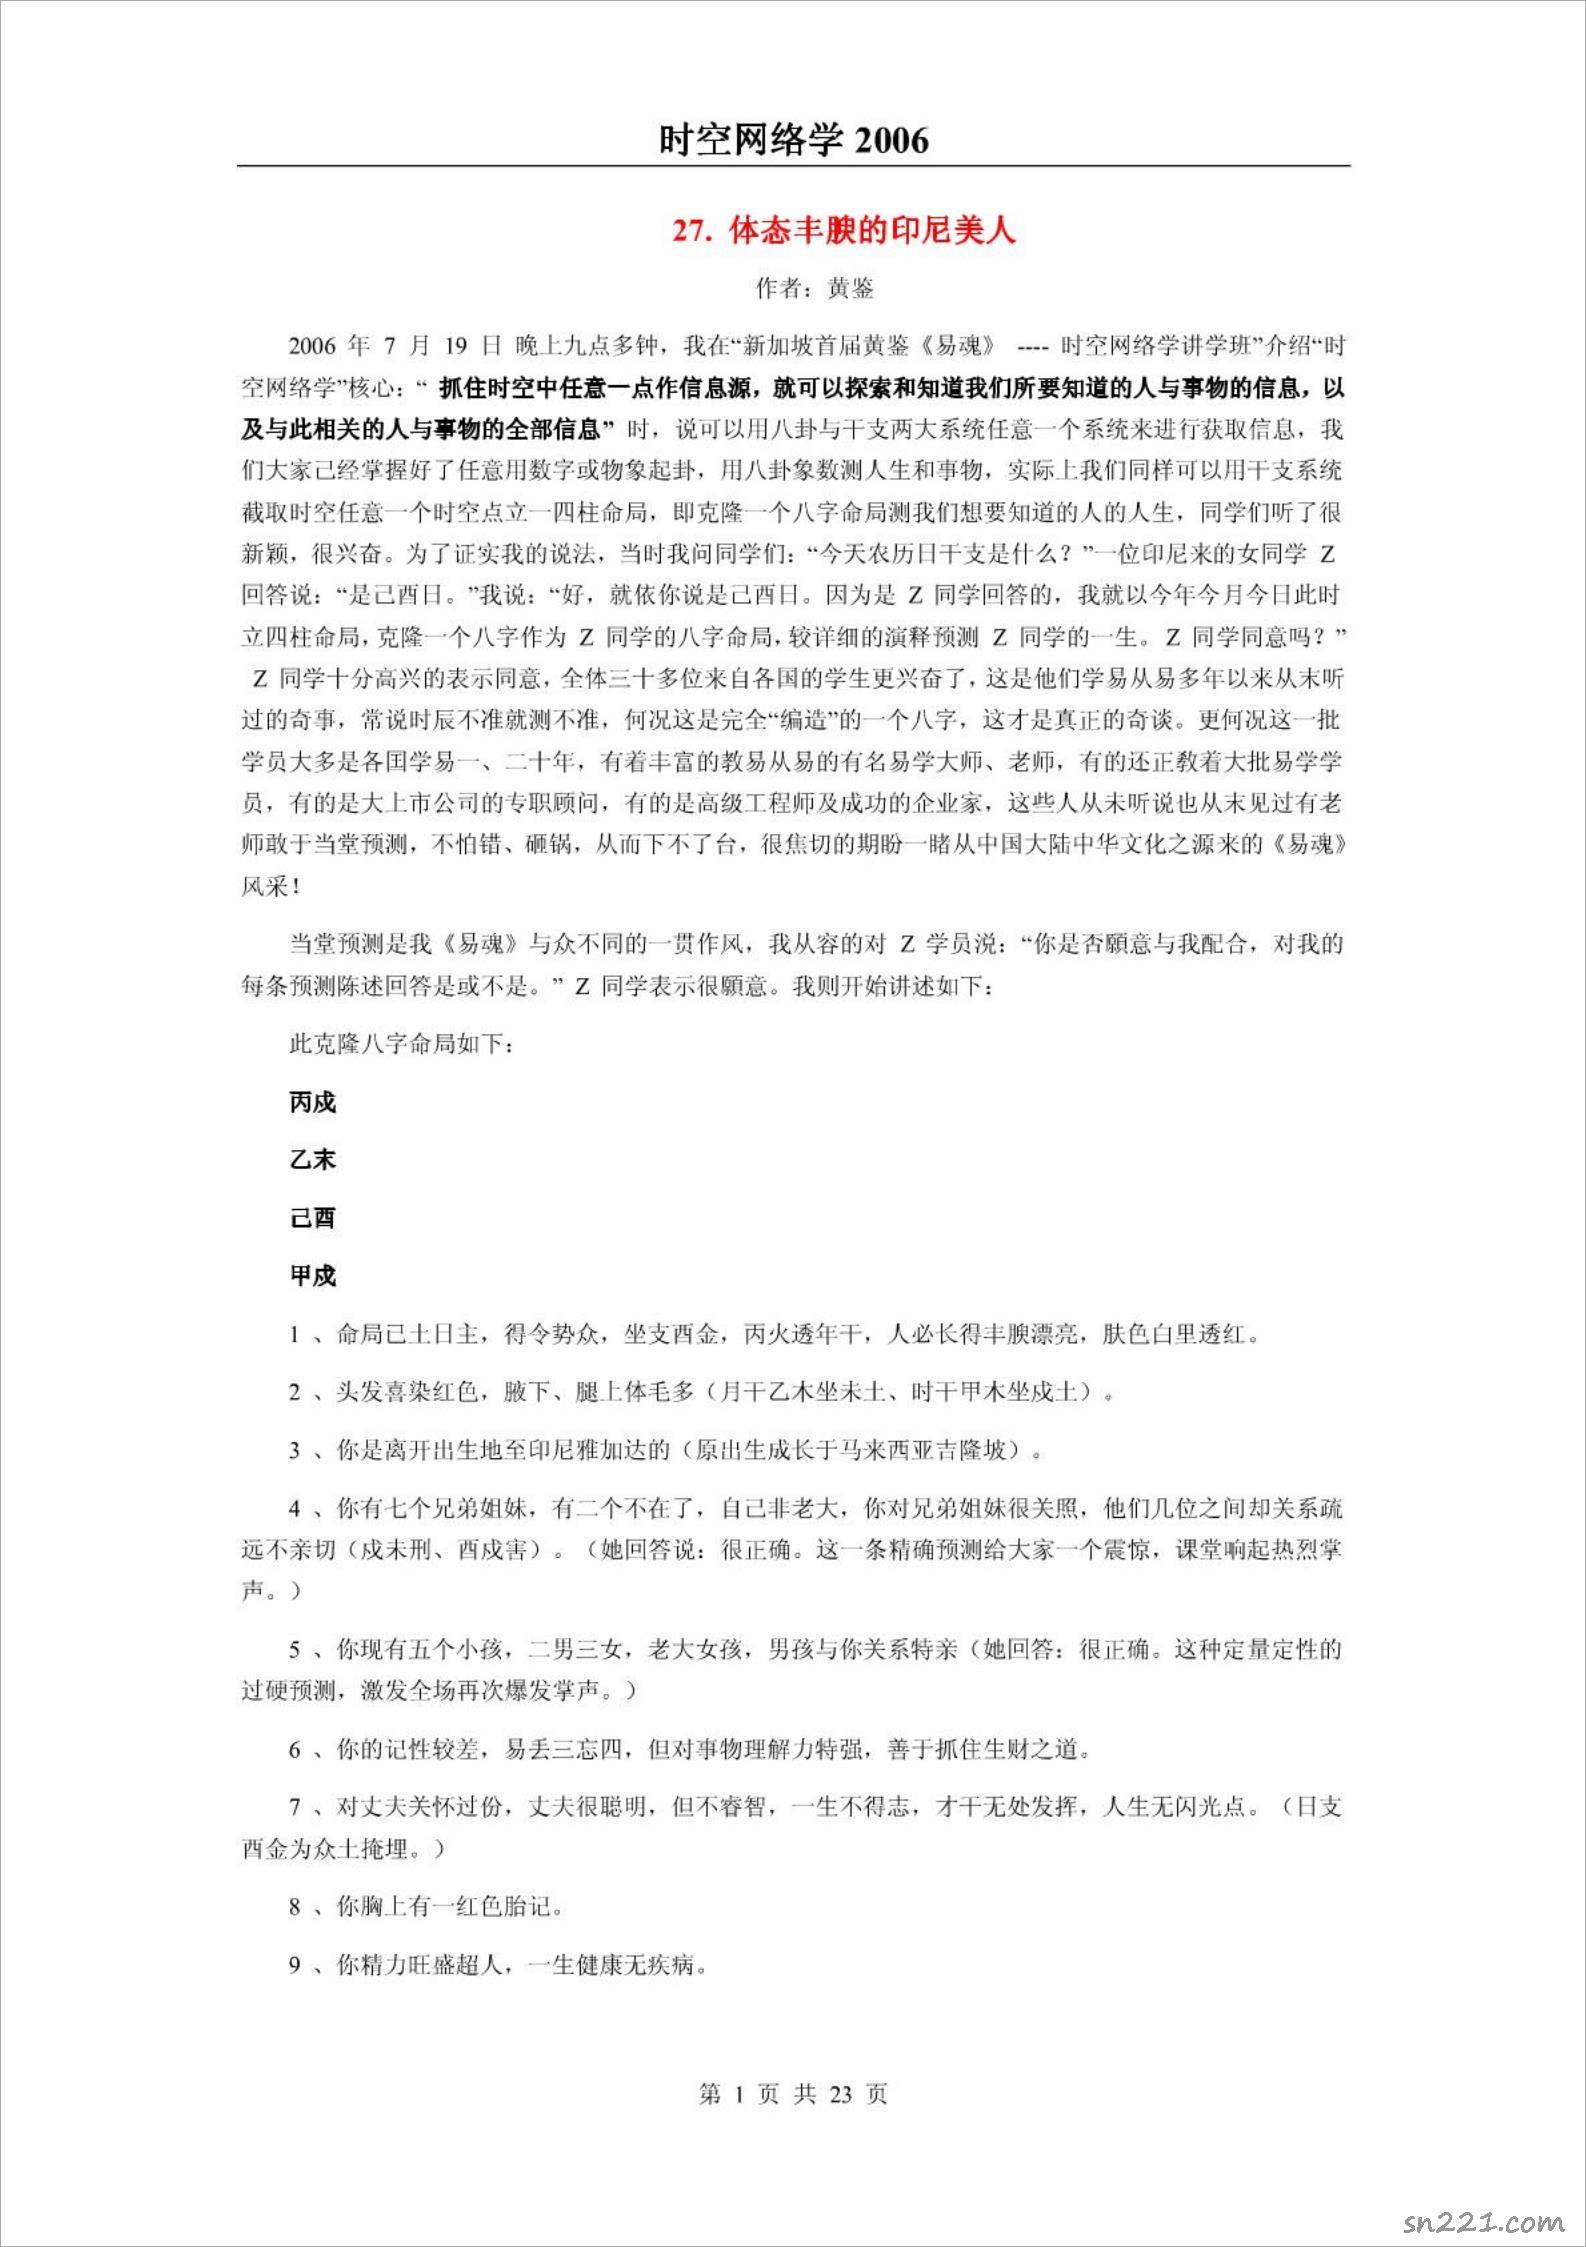 黃鑒-《易魂—時空網絡學》（2006）23頁.pdf